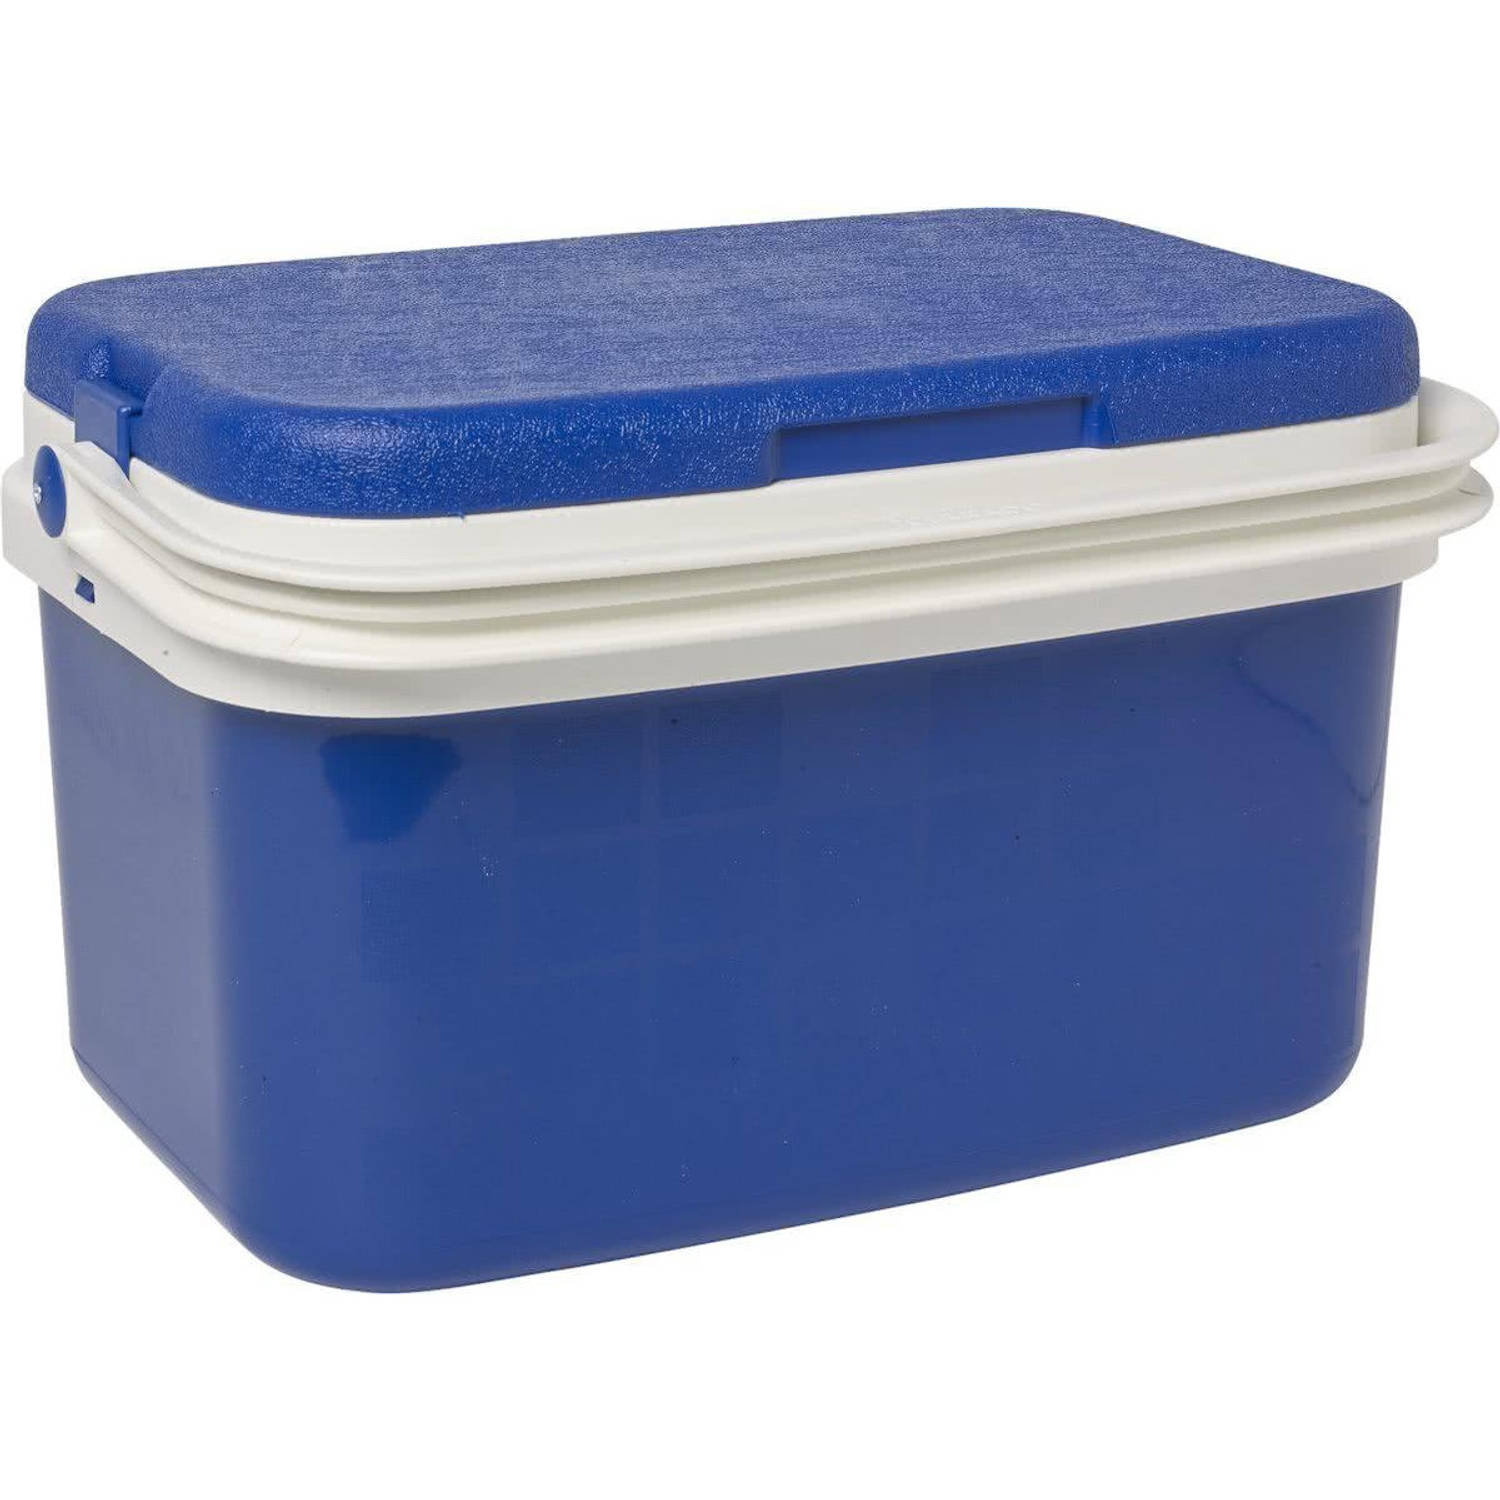 Koelbox donkerblauw 16 liter 42 x 29 x 26 cm - Koelboxen